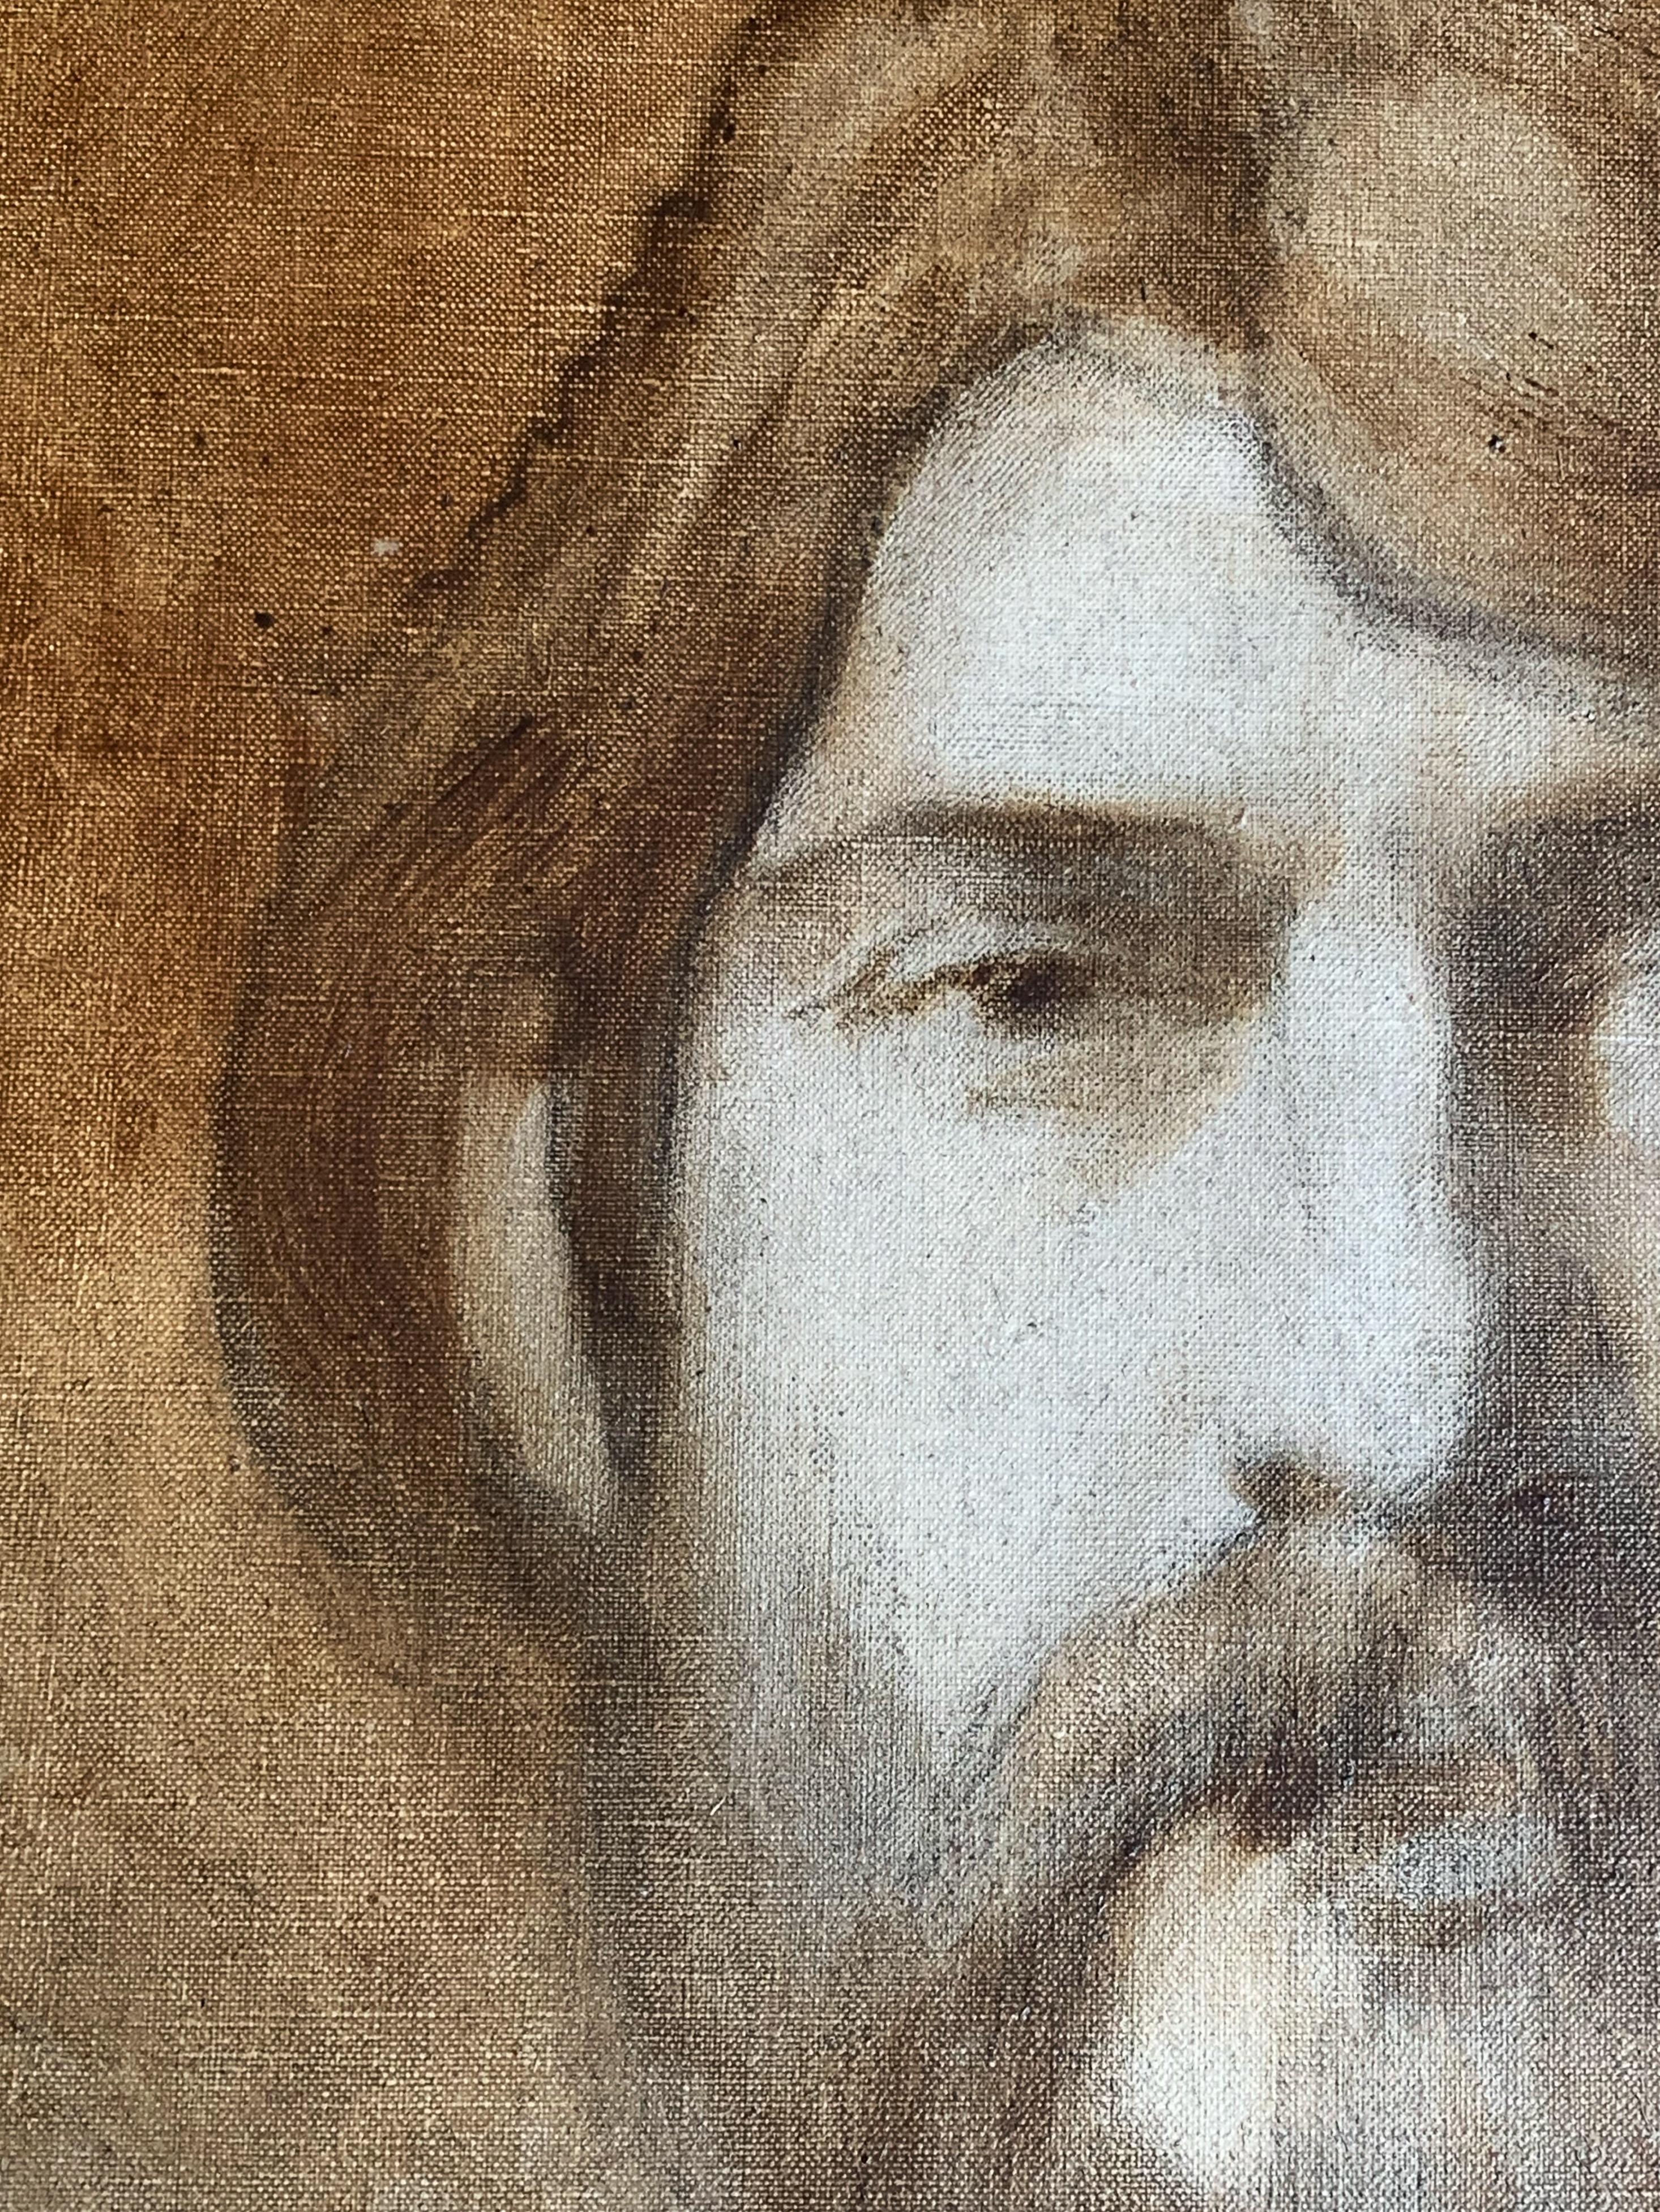 Portrait of the painter Louis Degallaix (1877-1951), 1910 - Painting by Henri Bouché-Leclercq